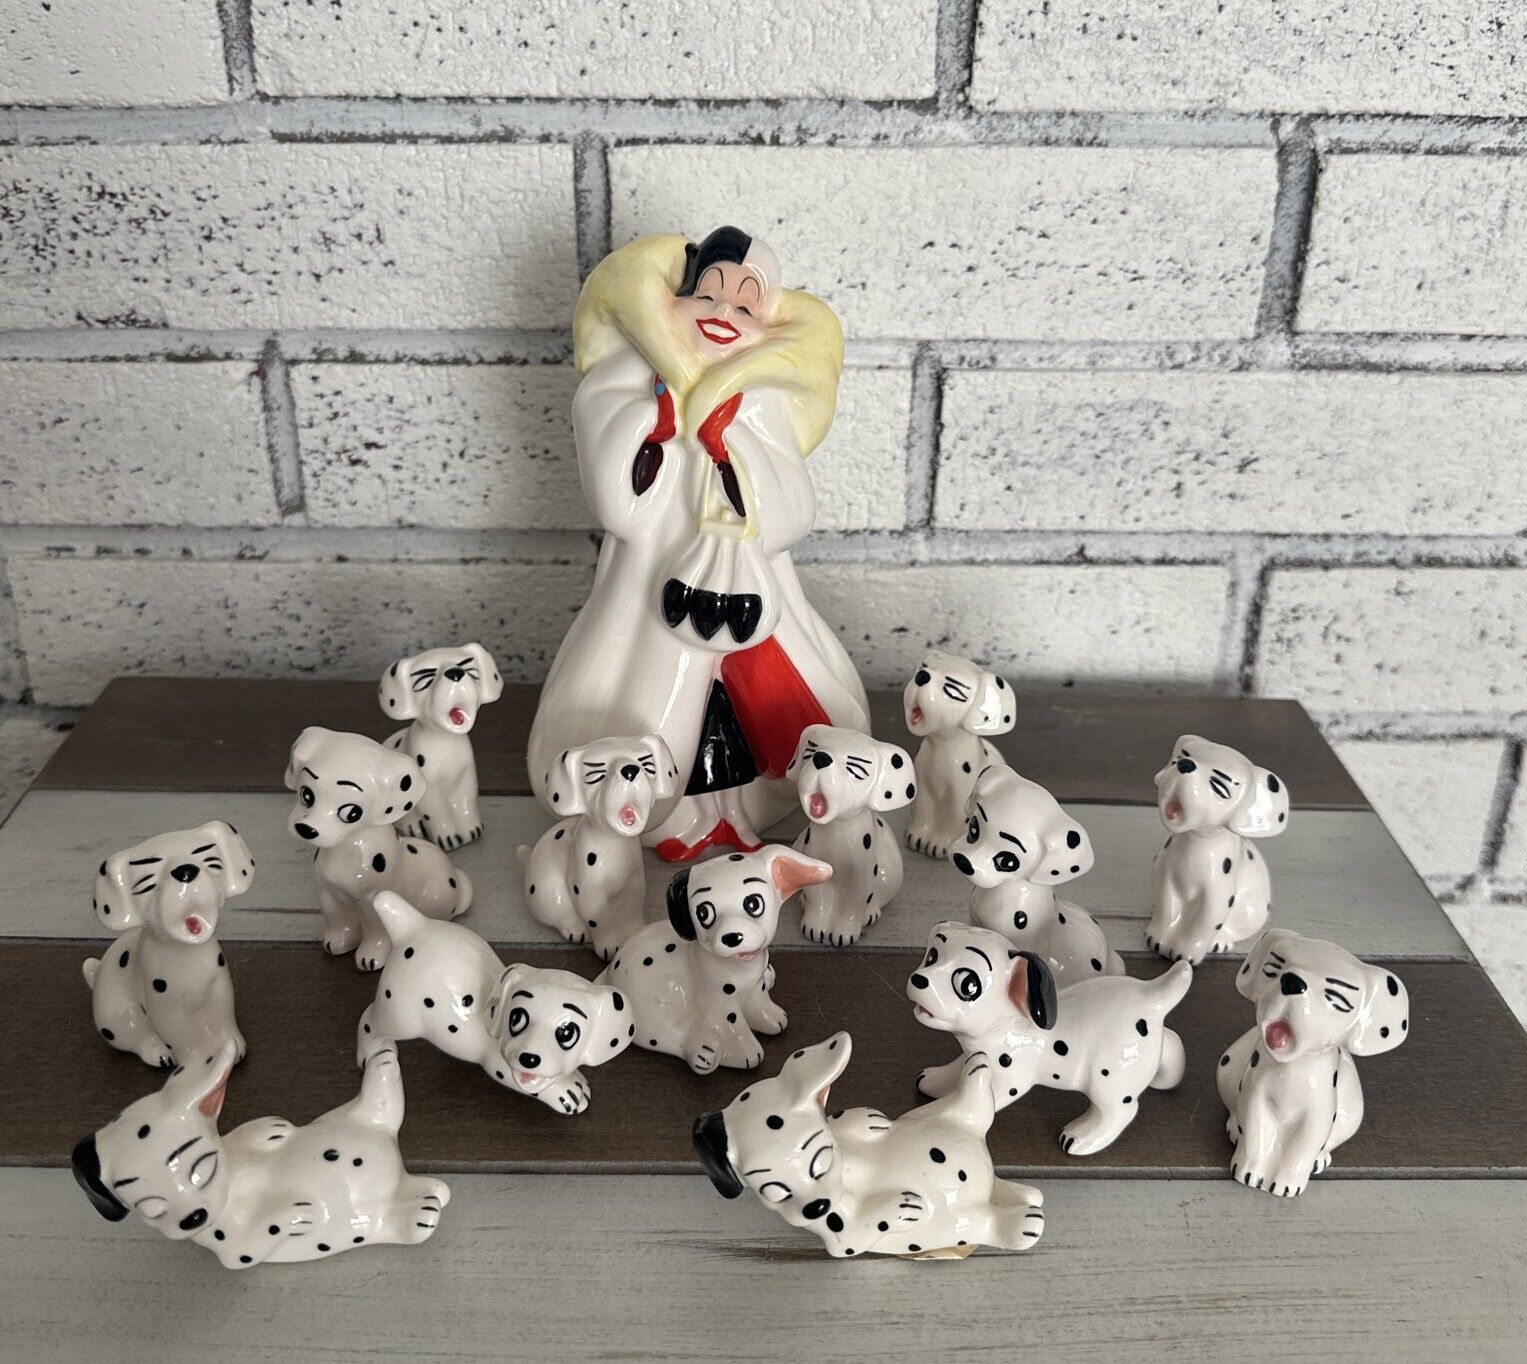 Disney 101 Dalmatians LOT Of 15 Vintage Cruella DeVil & Puppies Dalmatians Japan